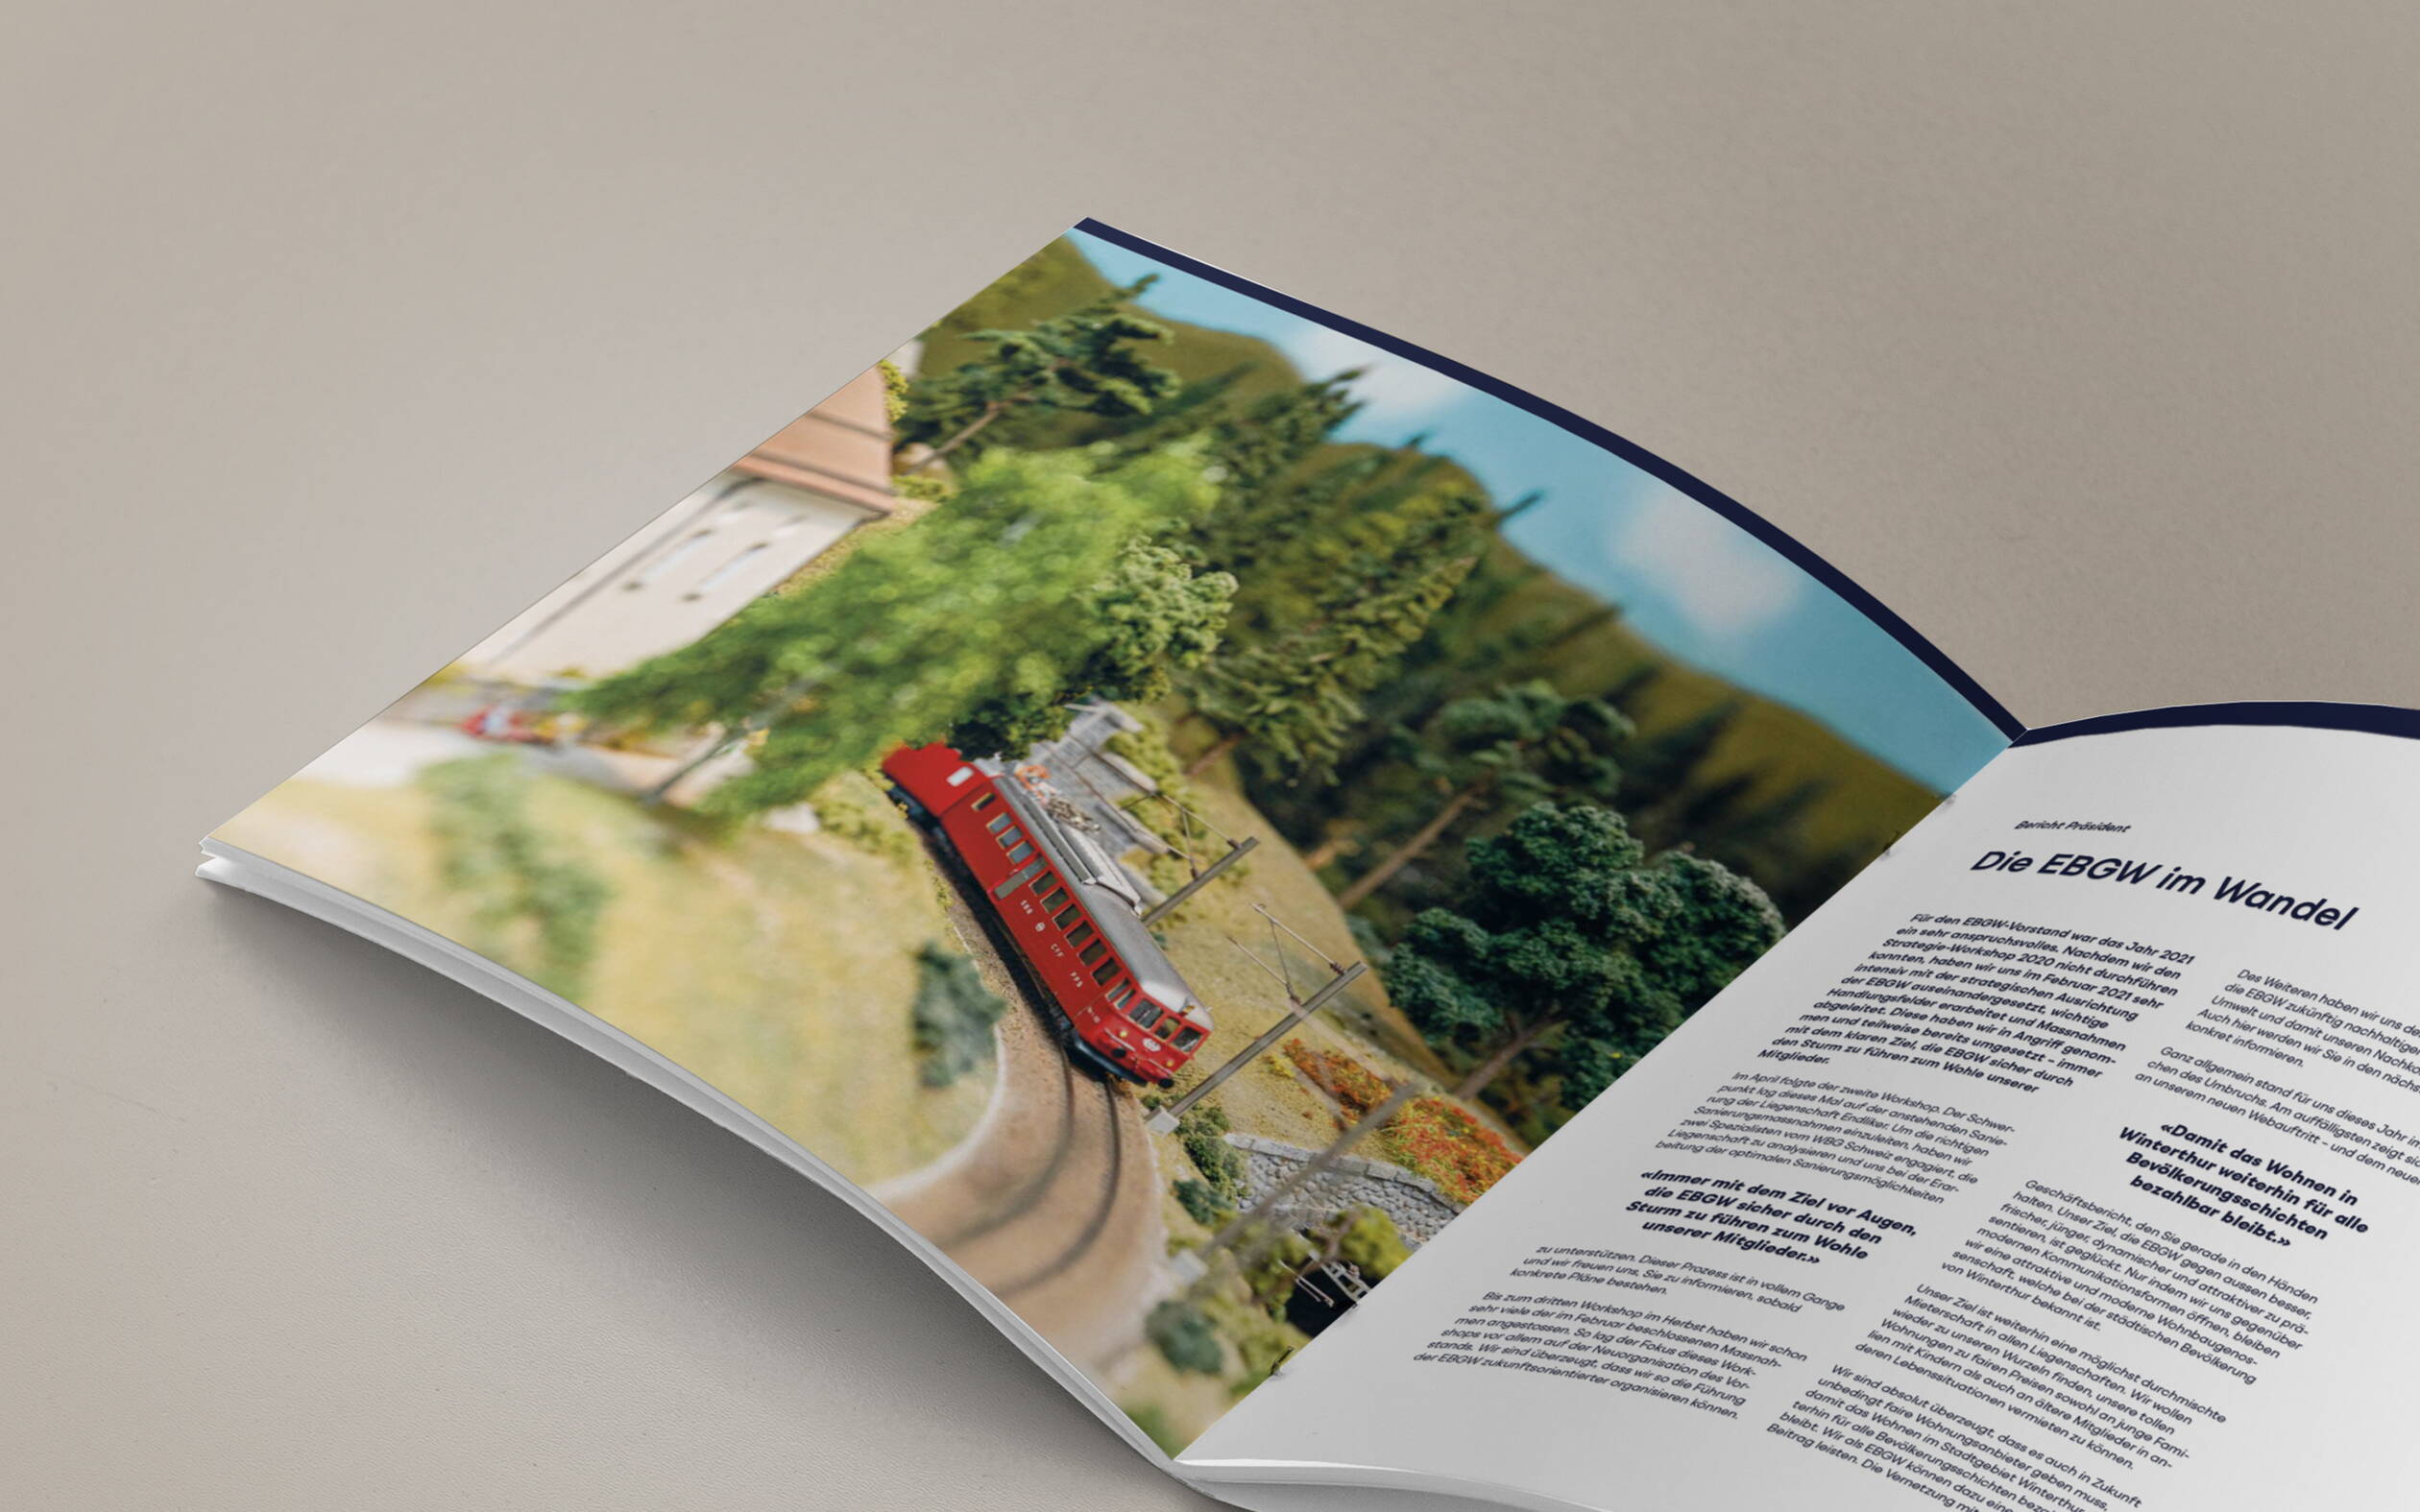 EBGW: Geschäftsbericht, Layout, Editorial Design, Grafikdesign und Branding von deiner Grafikagentur in Winterthur.